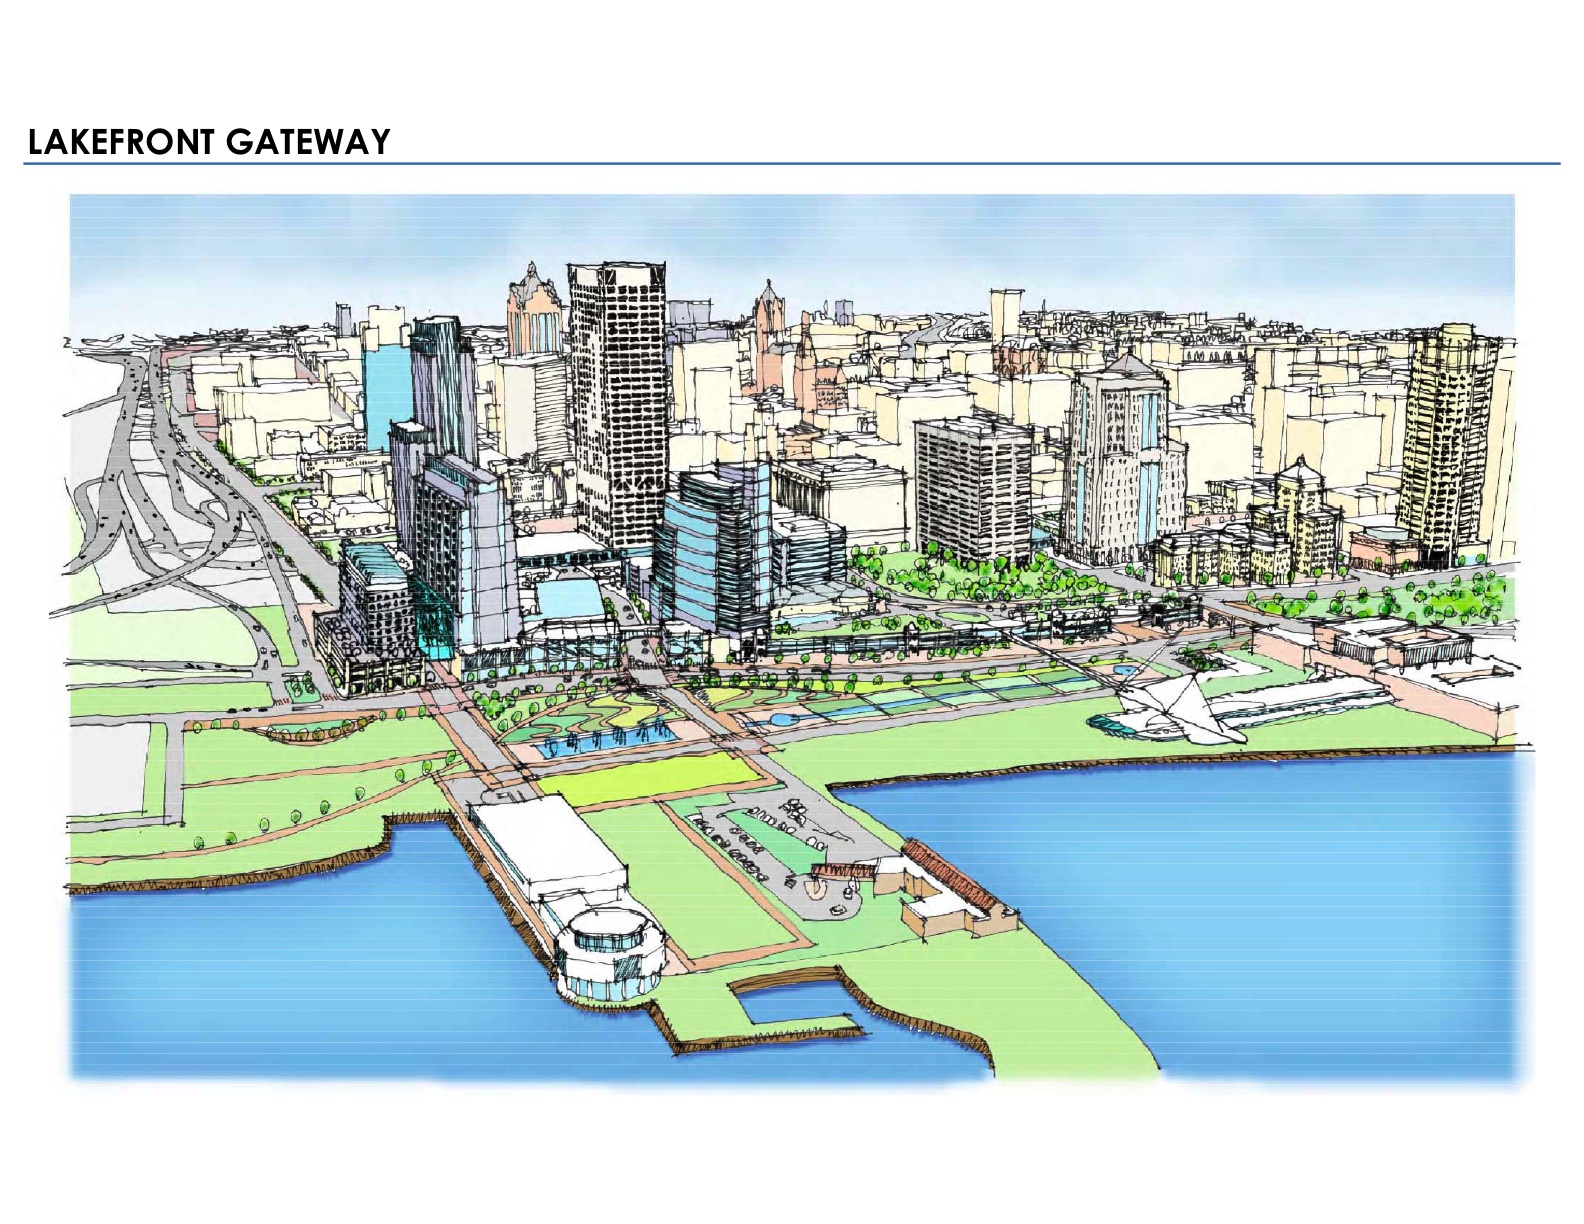 密尔沃基:新市区规划咨询团队宣布